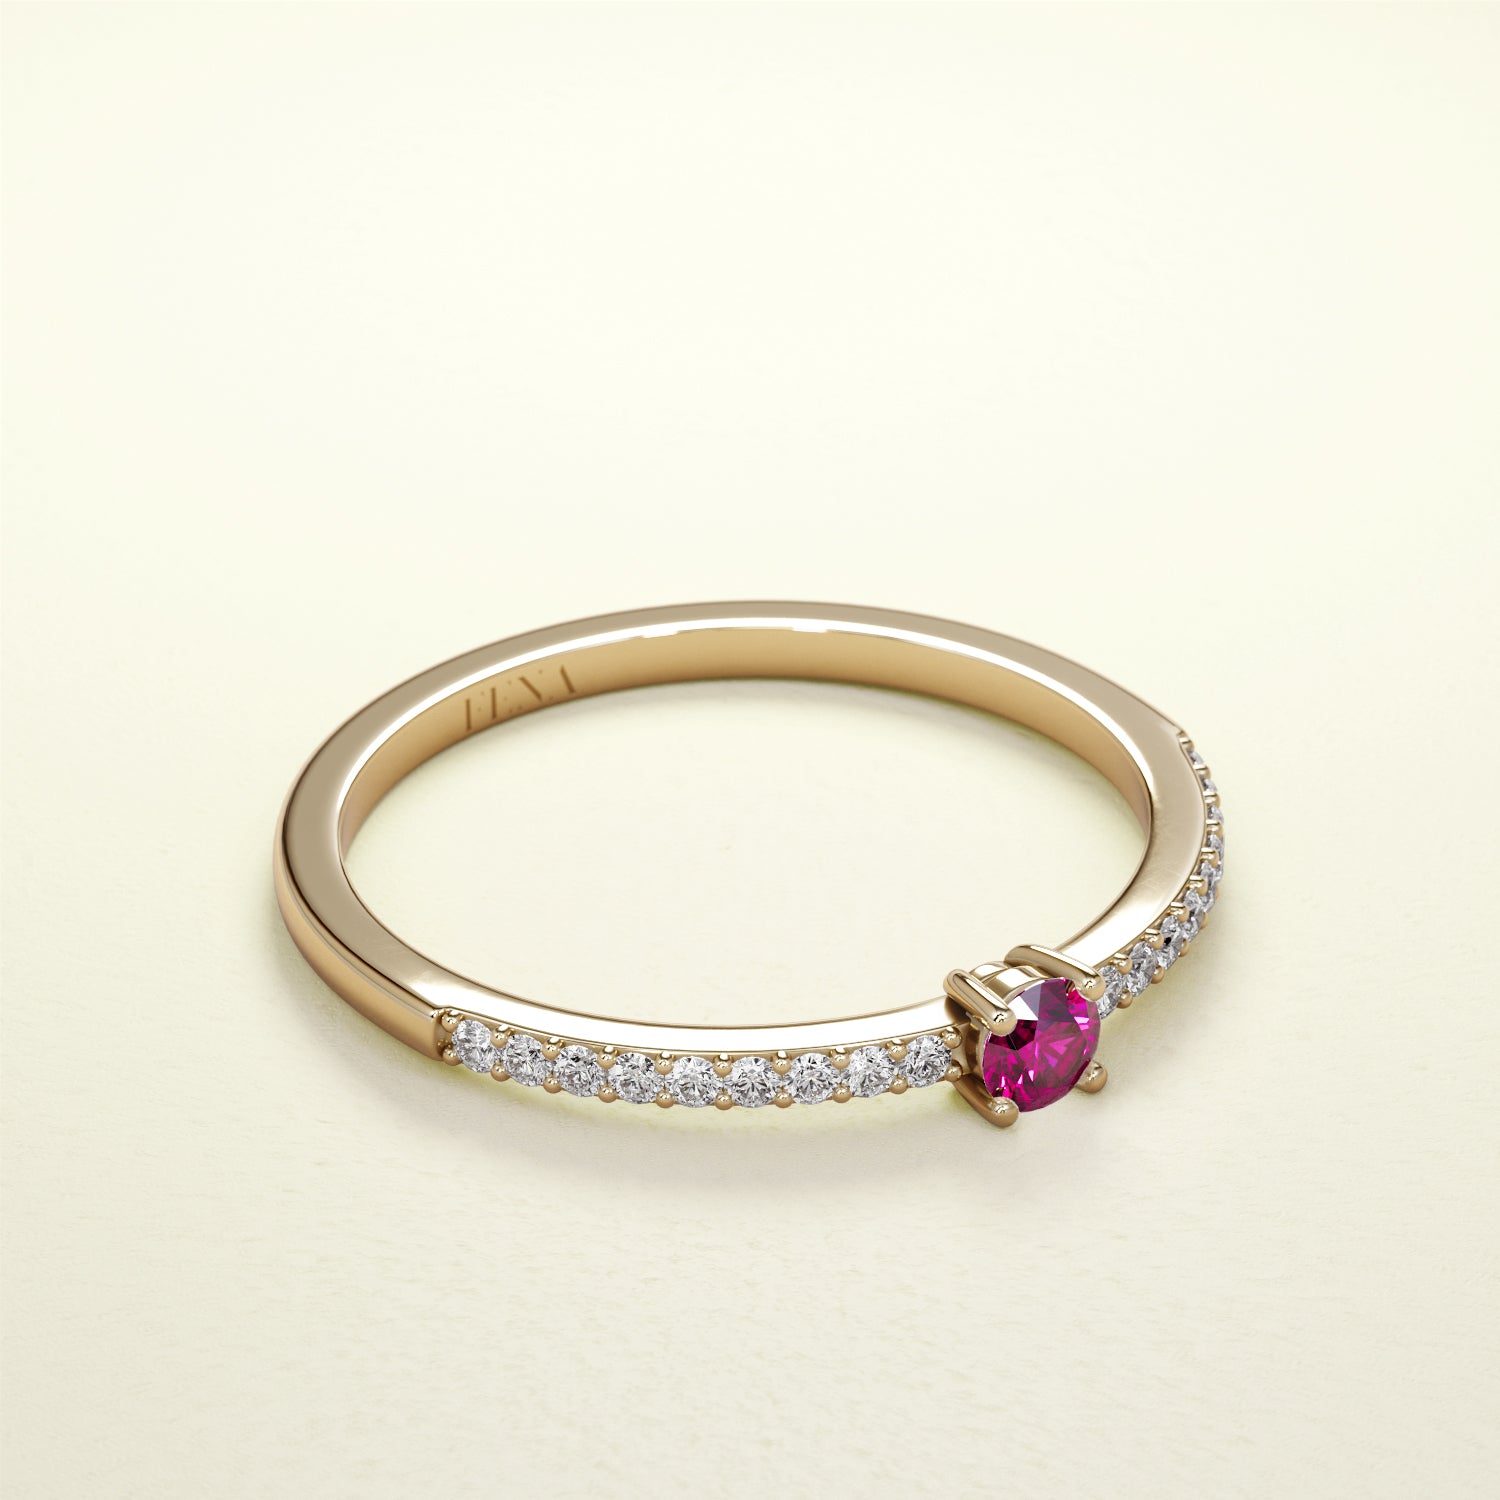 Birthstone Ring Jänner in Gelbgold mit rotem Granat und Diamanten. Von FENA daily Jewellery.